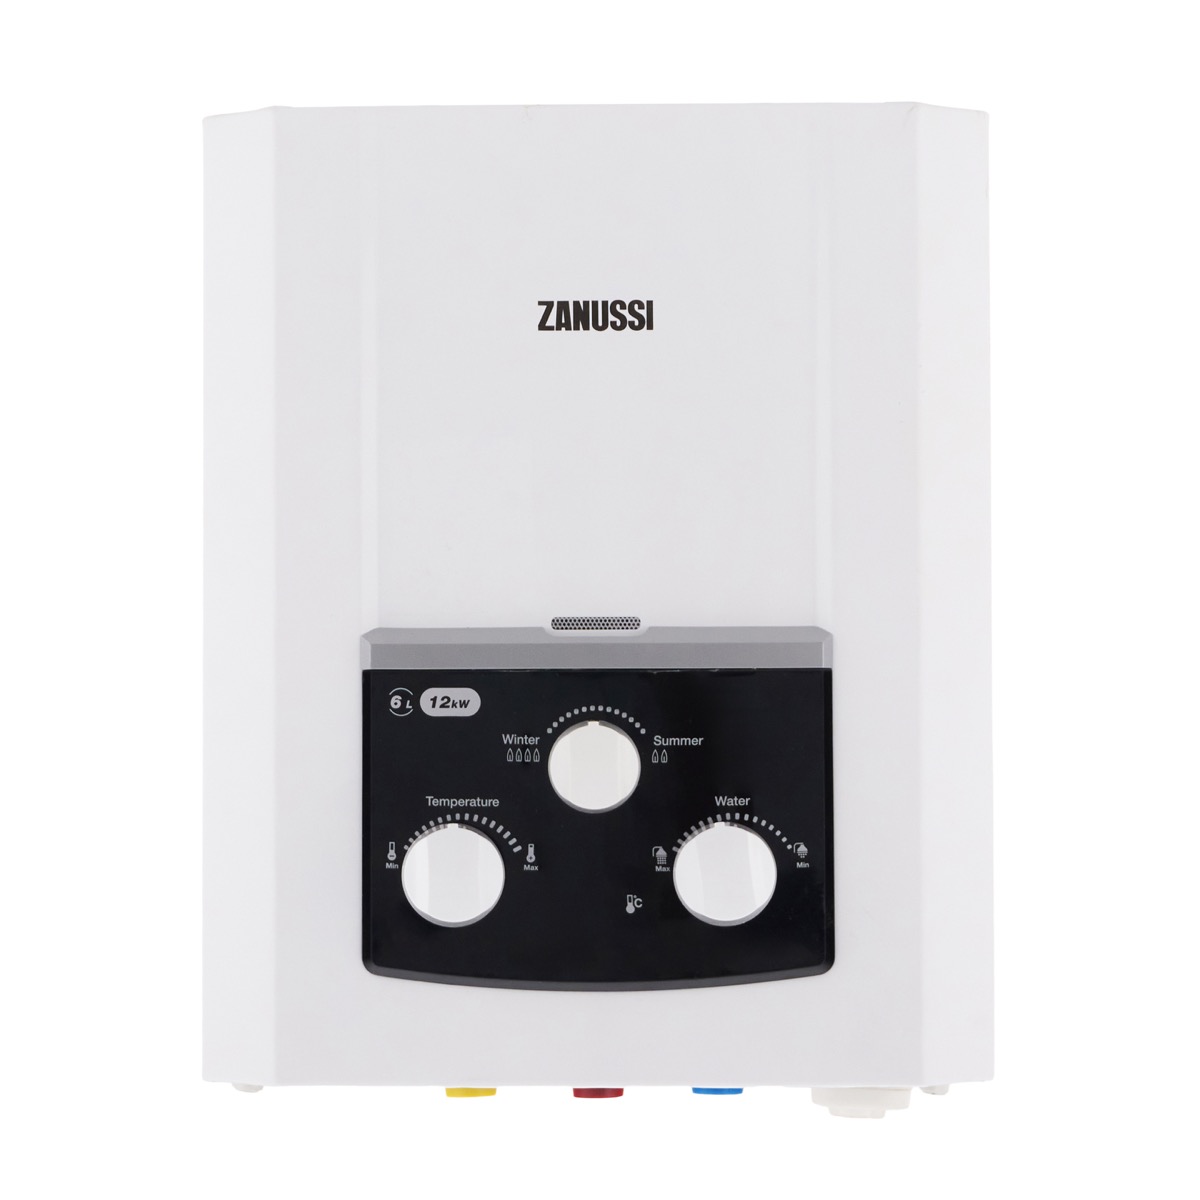 Zanussi Digital Gas Water Heater, 6 Liters, White - 5567